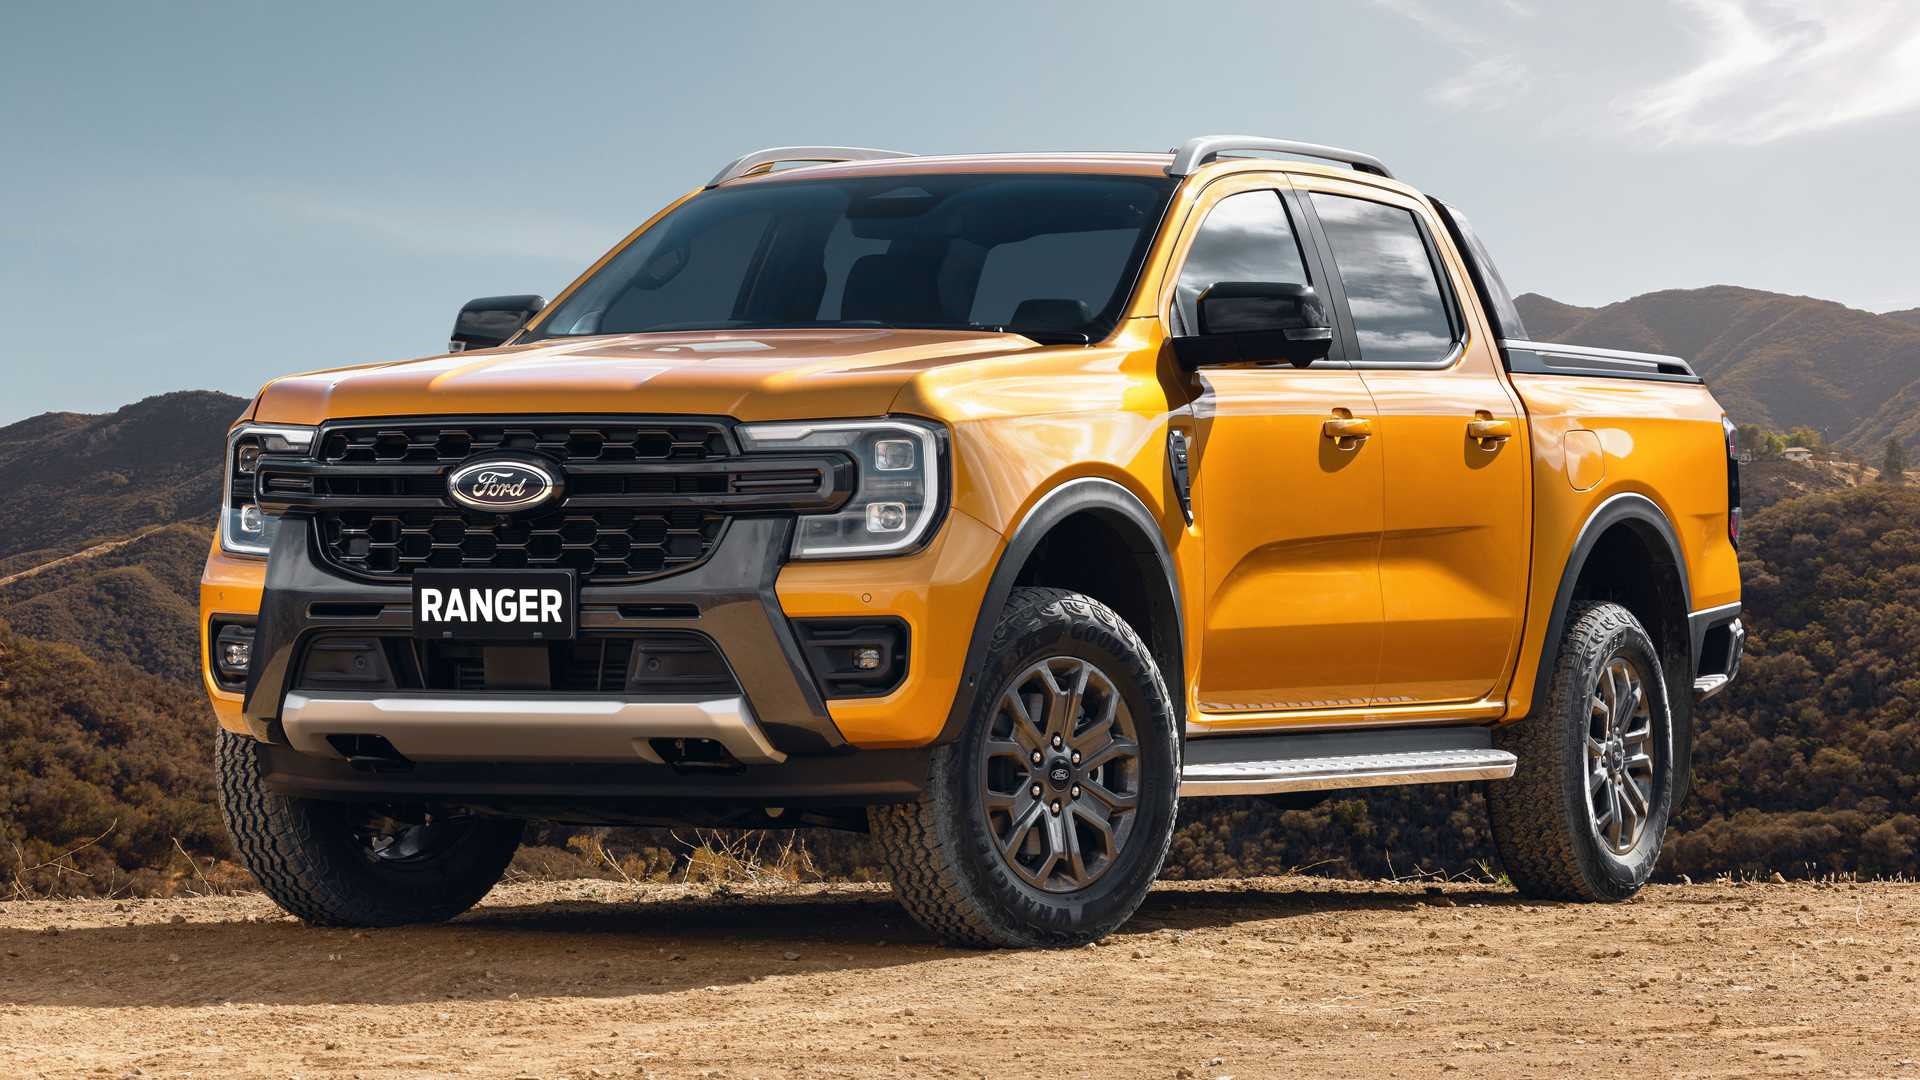 Ford Ranger tiếp tục vững vàng vị trí thứ 2 thị trường và độc chiếm gần như toàn thị phần trong phân khúc xe bán tải tại Việt Nam. Ảnh: Ford